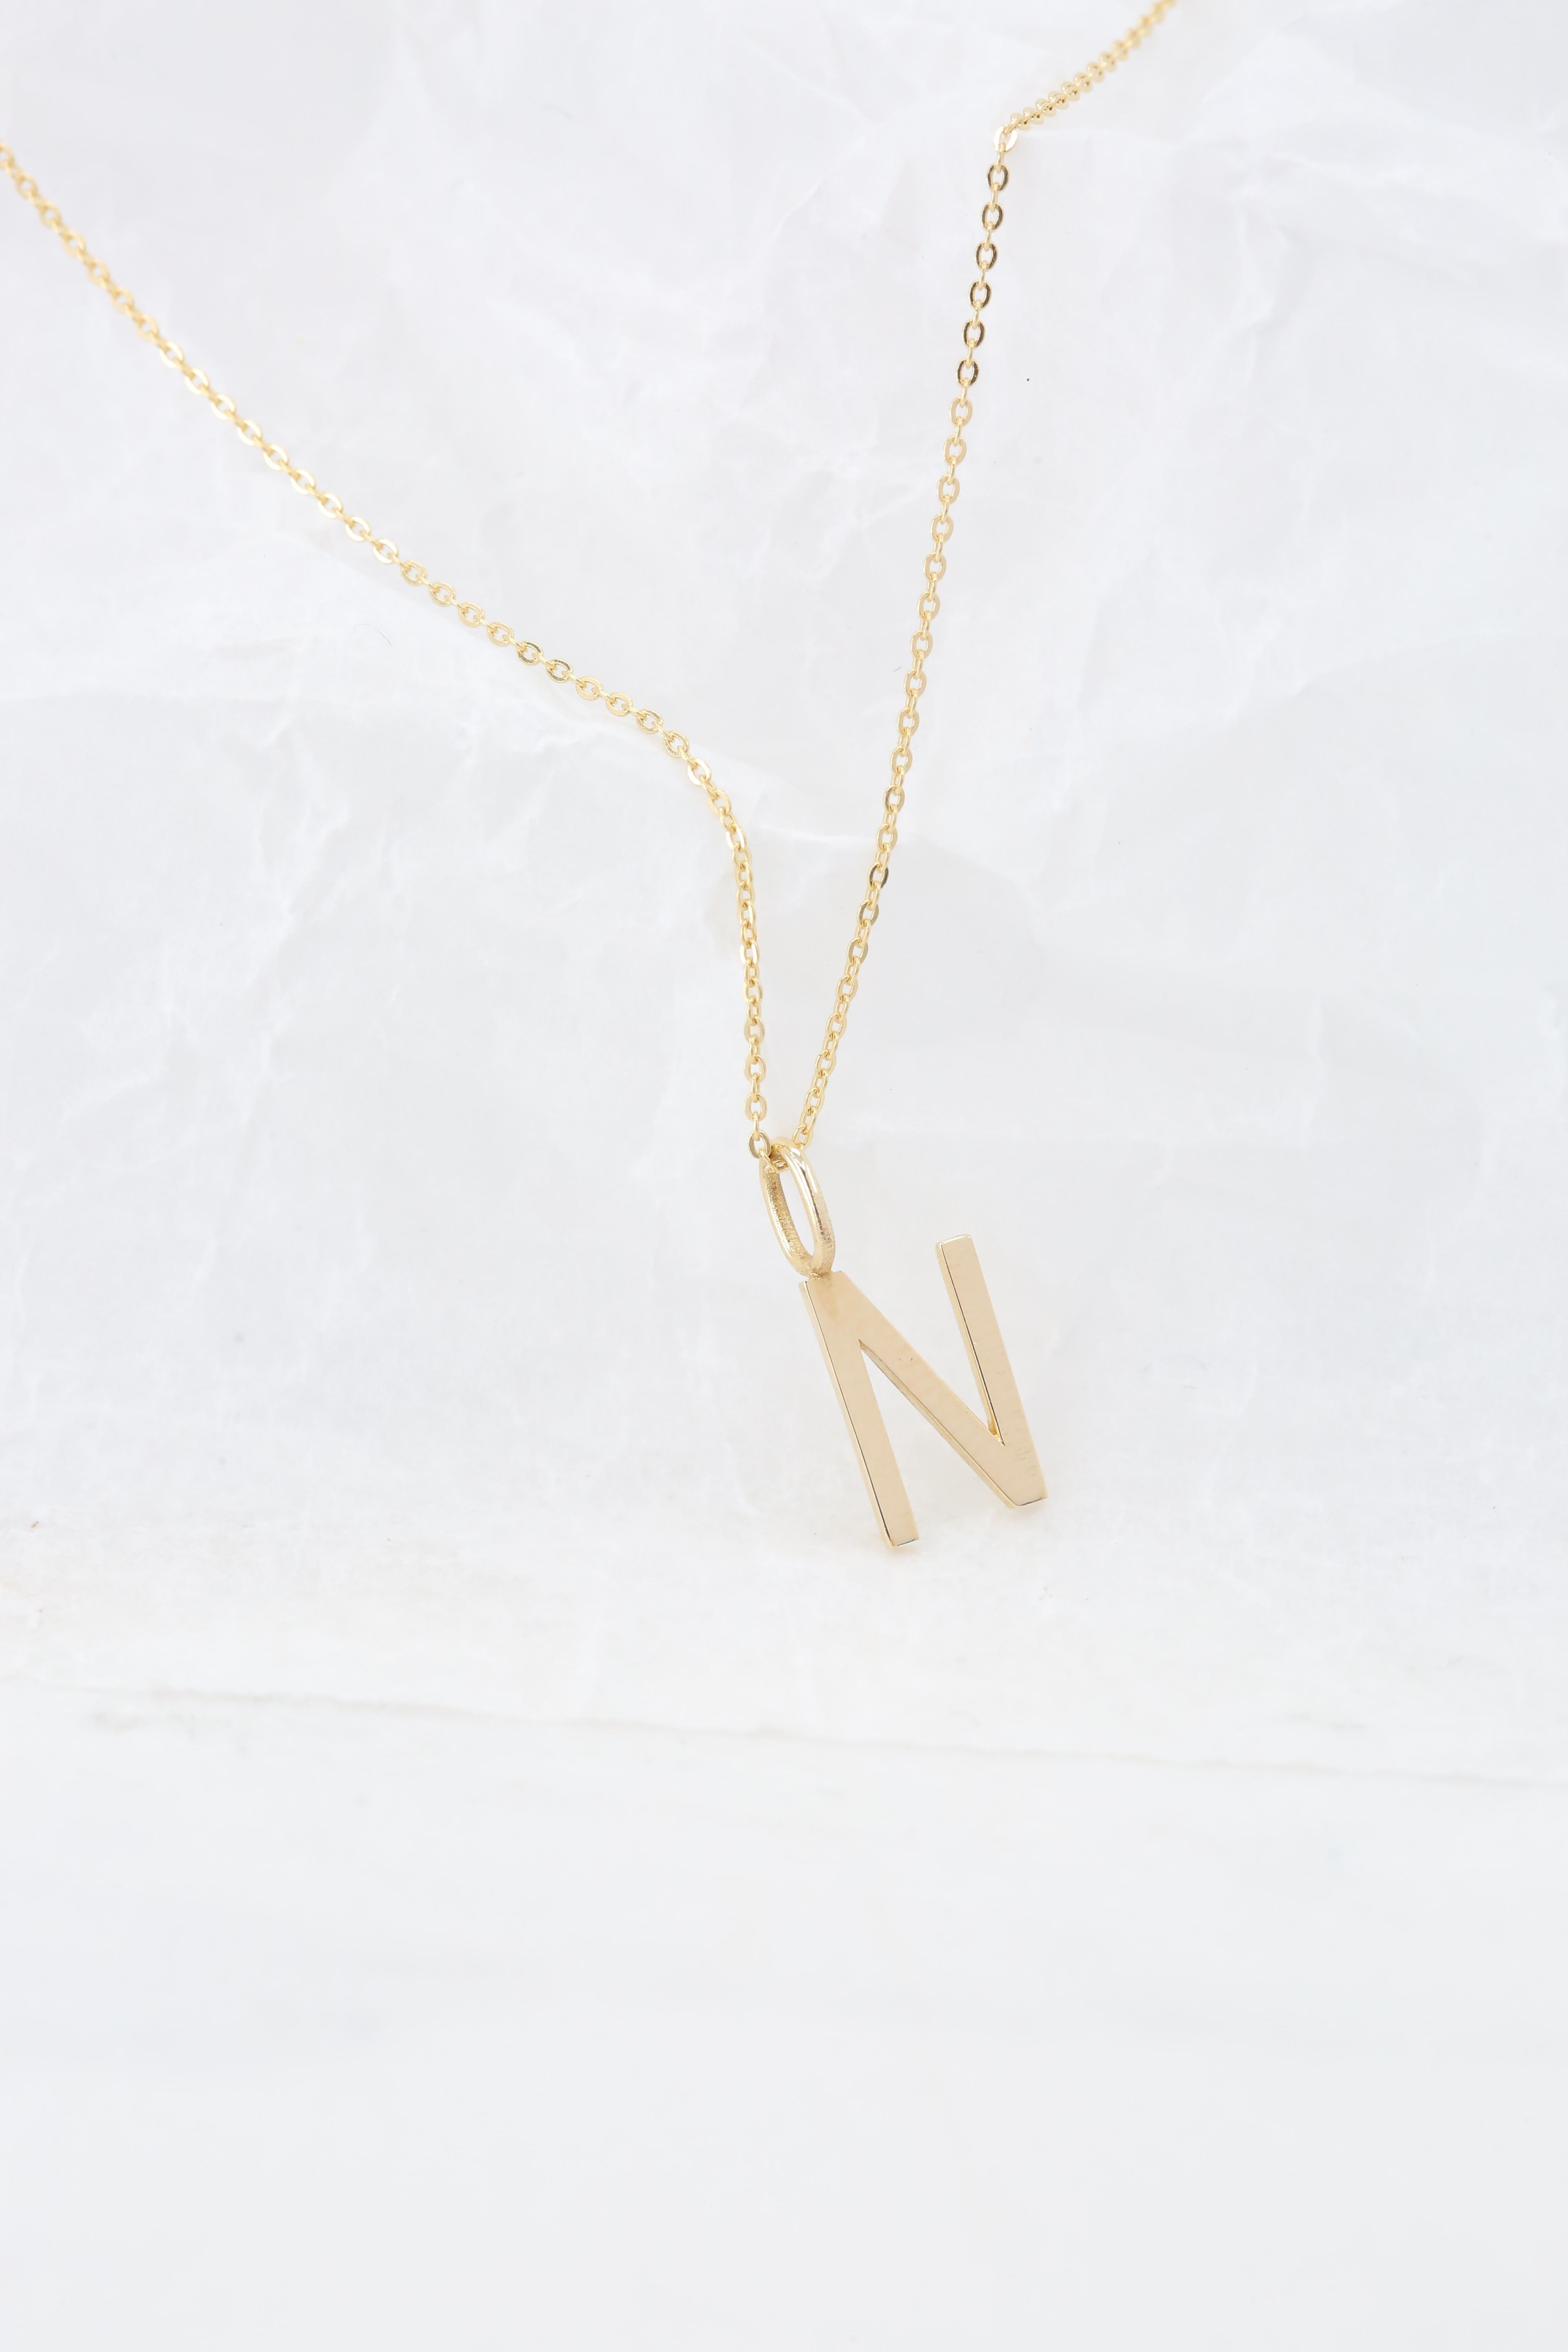 Modern 14k Gold Necklaces, Letter Necklace Models, Letter N Gold Necklace-Gift Necklace For Sale